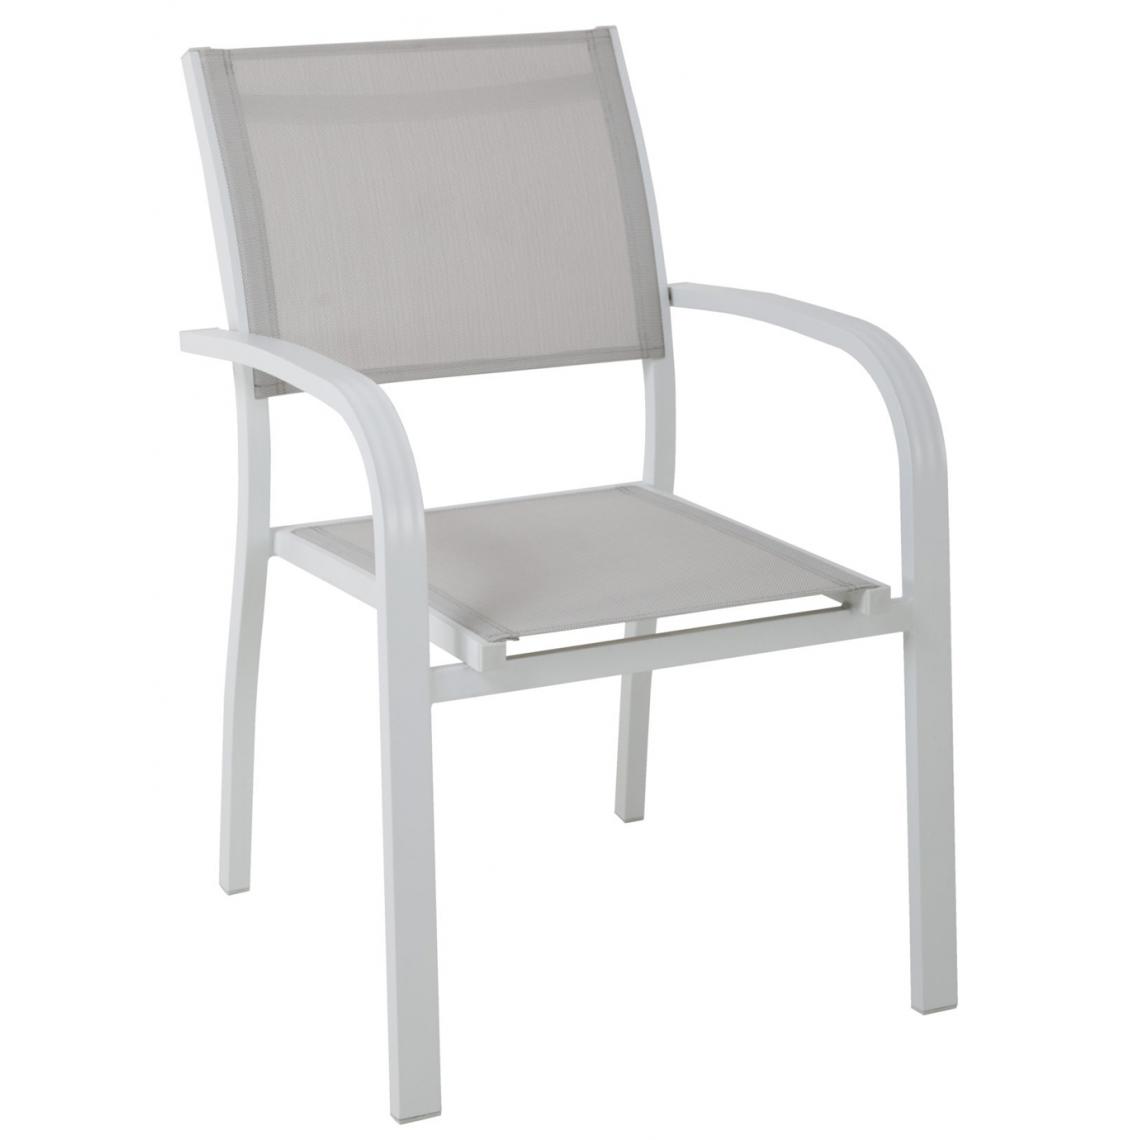 Pegane - Lot de 6 Chaises en aluminium et textilène coloris gris clair - 56 x 86 x 58 cm -PEGANE- - Chaises de jardin